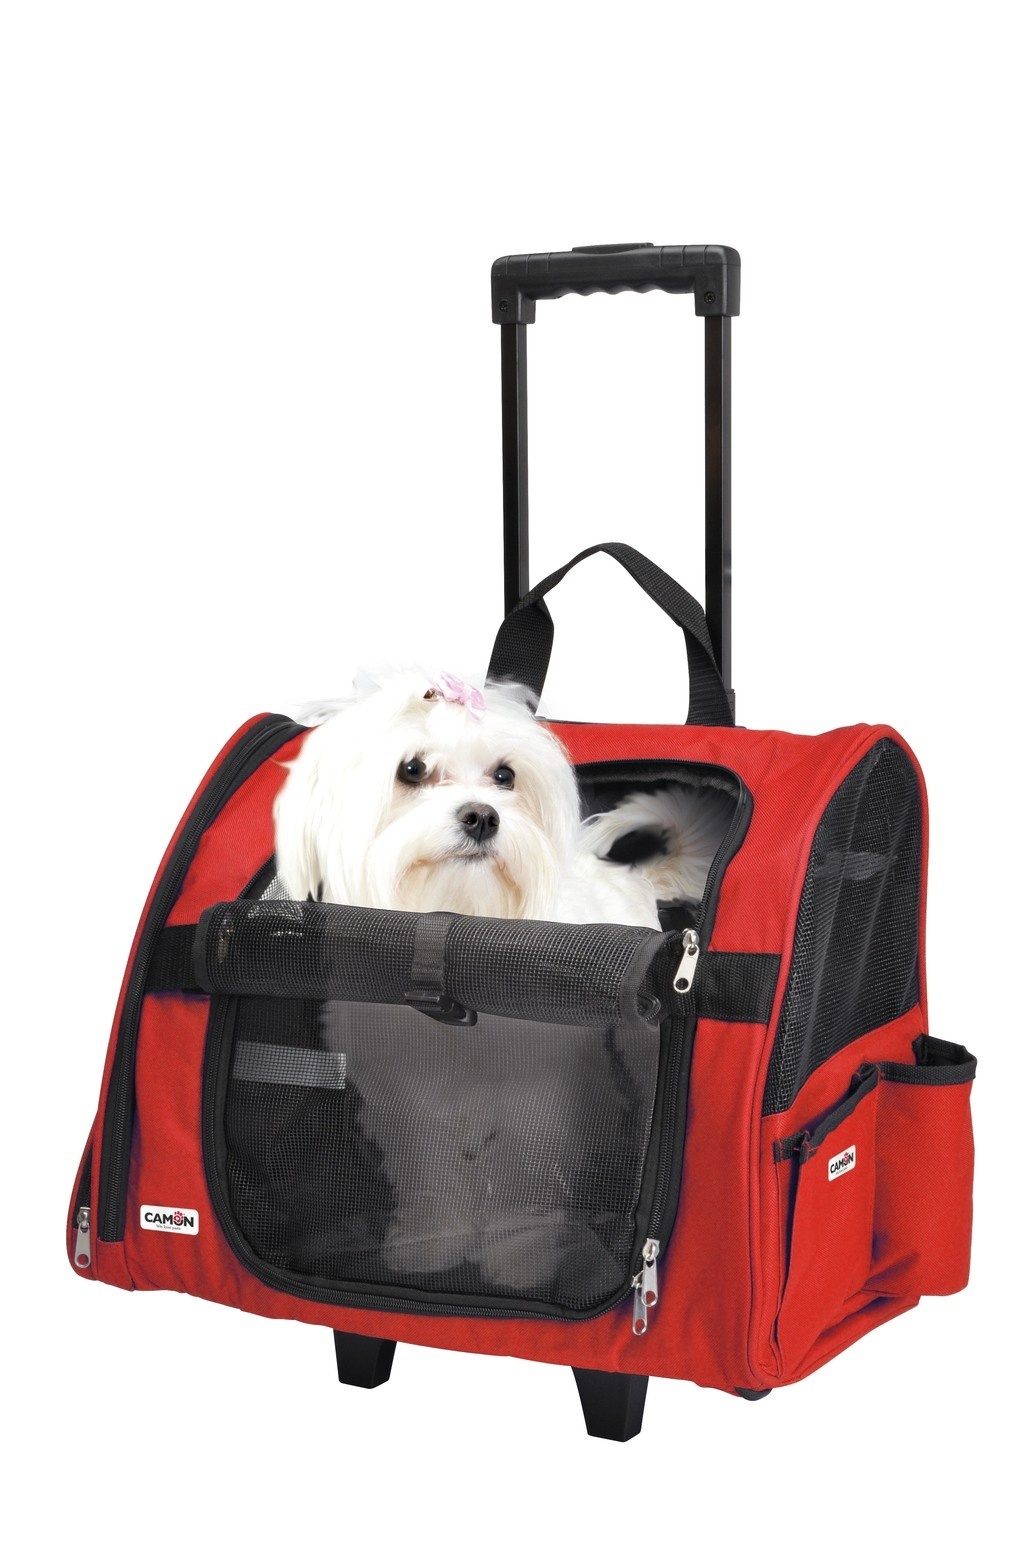 Camon Camon сумка-переноска Max для животных на колесах красная (43*26*36) многофункциональная деревянная детская буквенно цифровая доска для транспортировки животных